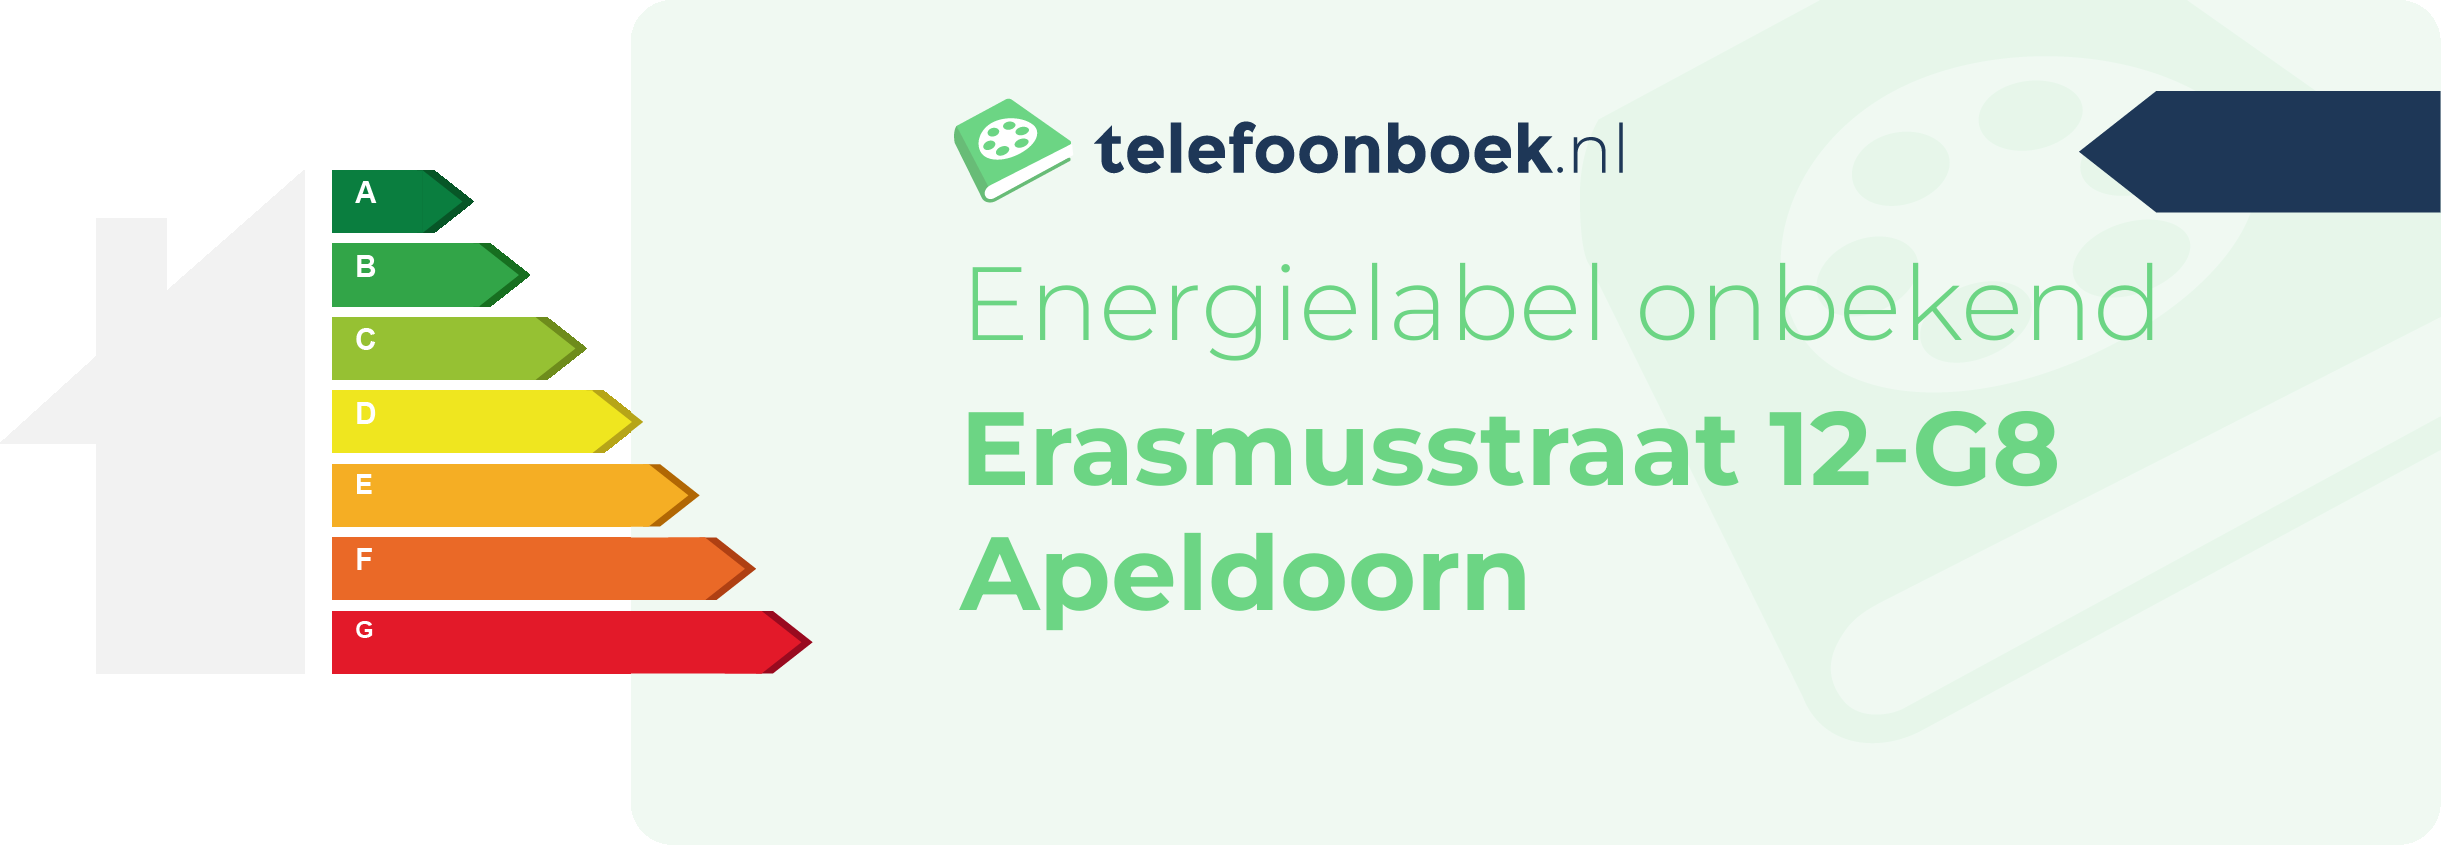 Energielabel Erasmusstraat 12-G8 Apeldoorn